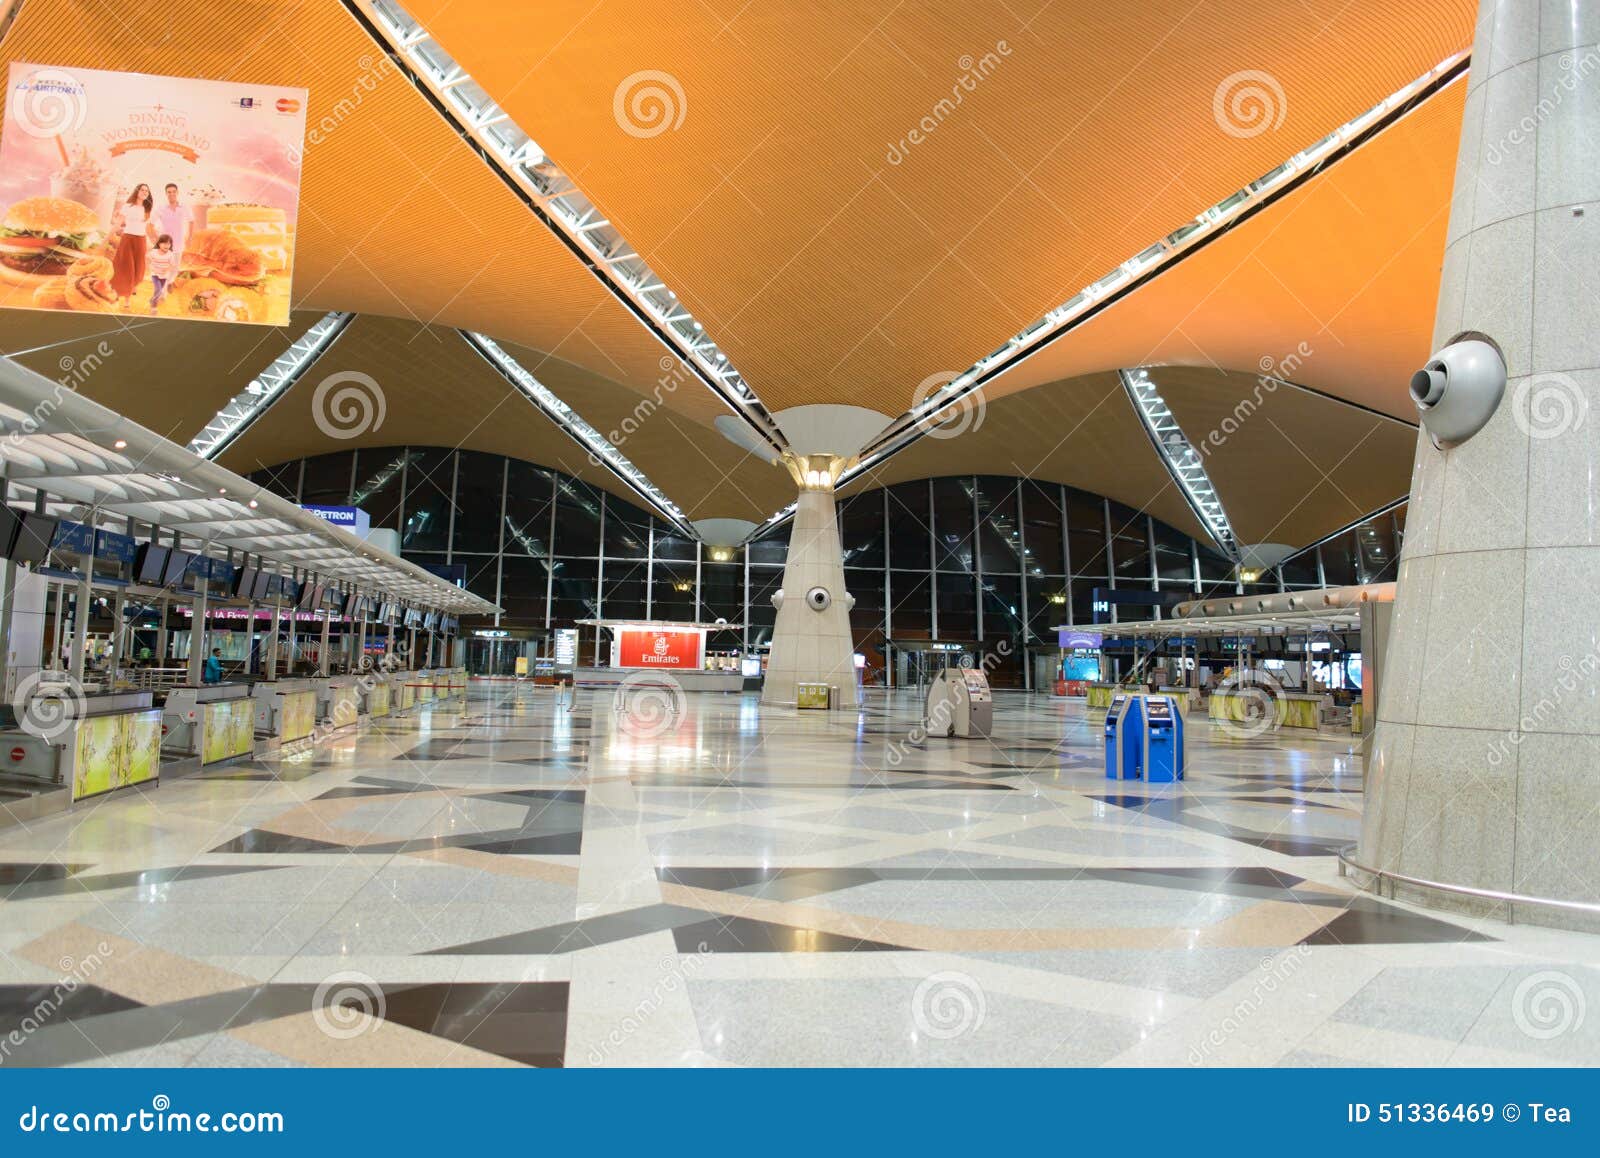 【机场贵宾室】 吉隆坡国际机场第二航站机场贵宾室 Wellness Spa at Level 3 KLIA2 International ...